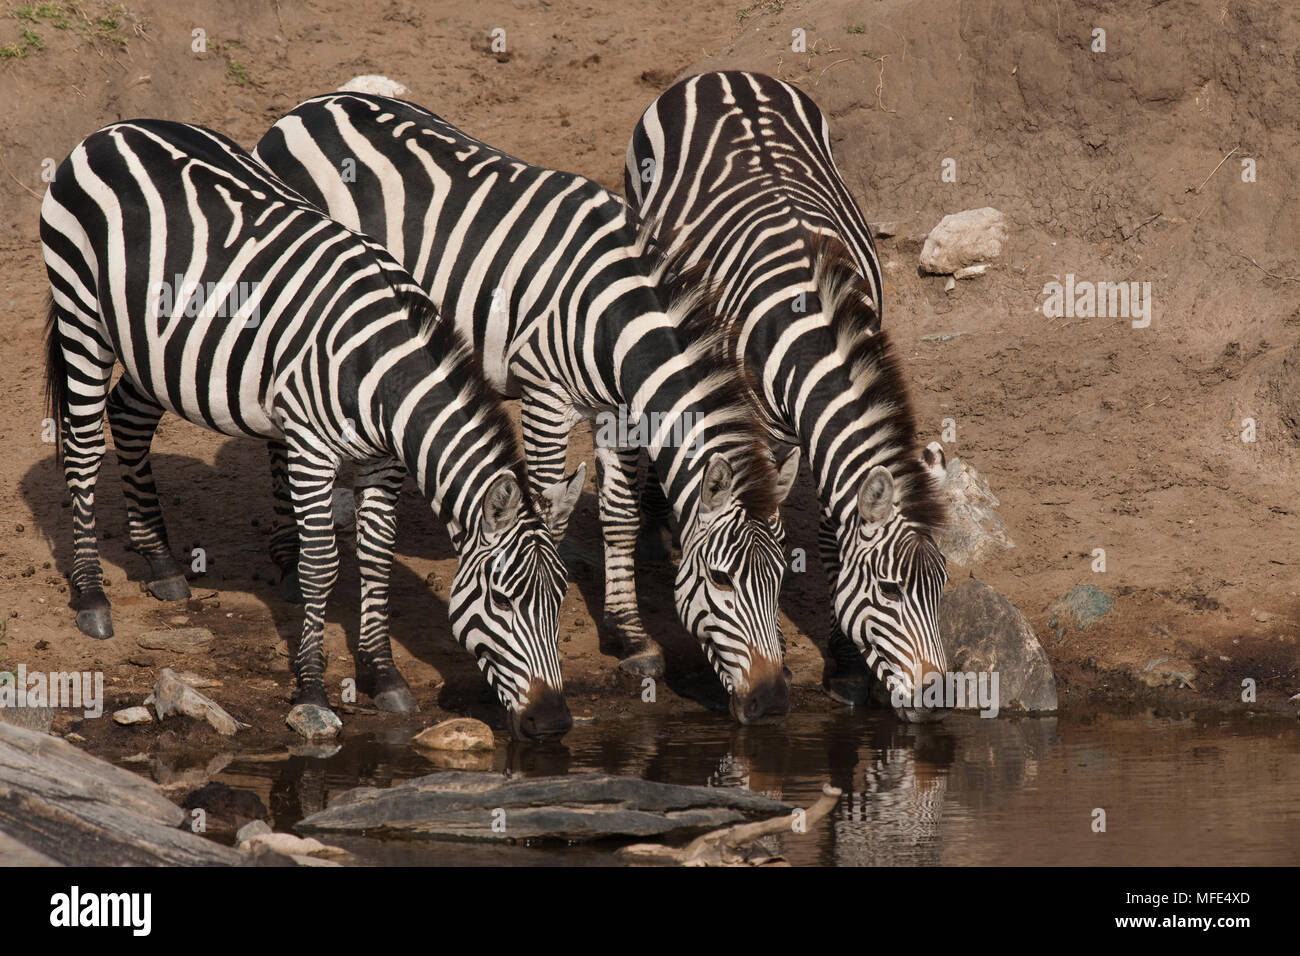 La moule commune de boire à un point d'eau ; Equus burchelli, Masai Mara, Kenya. Banque D'Images